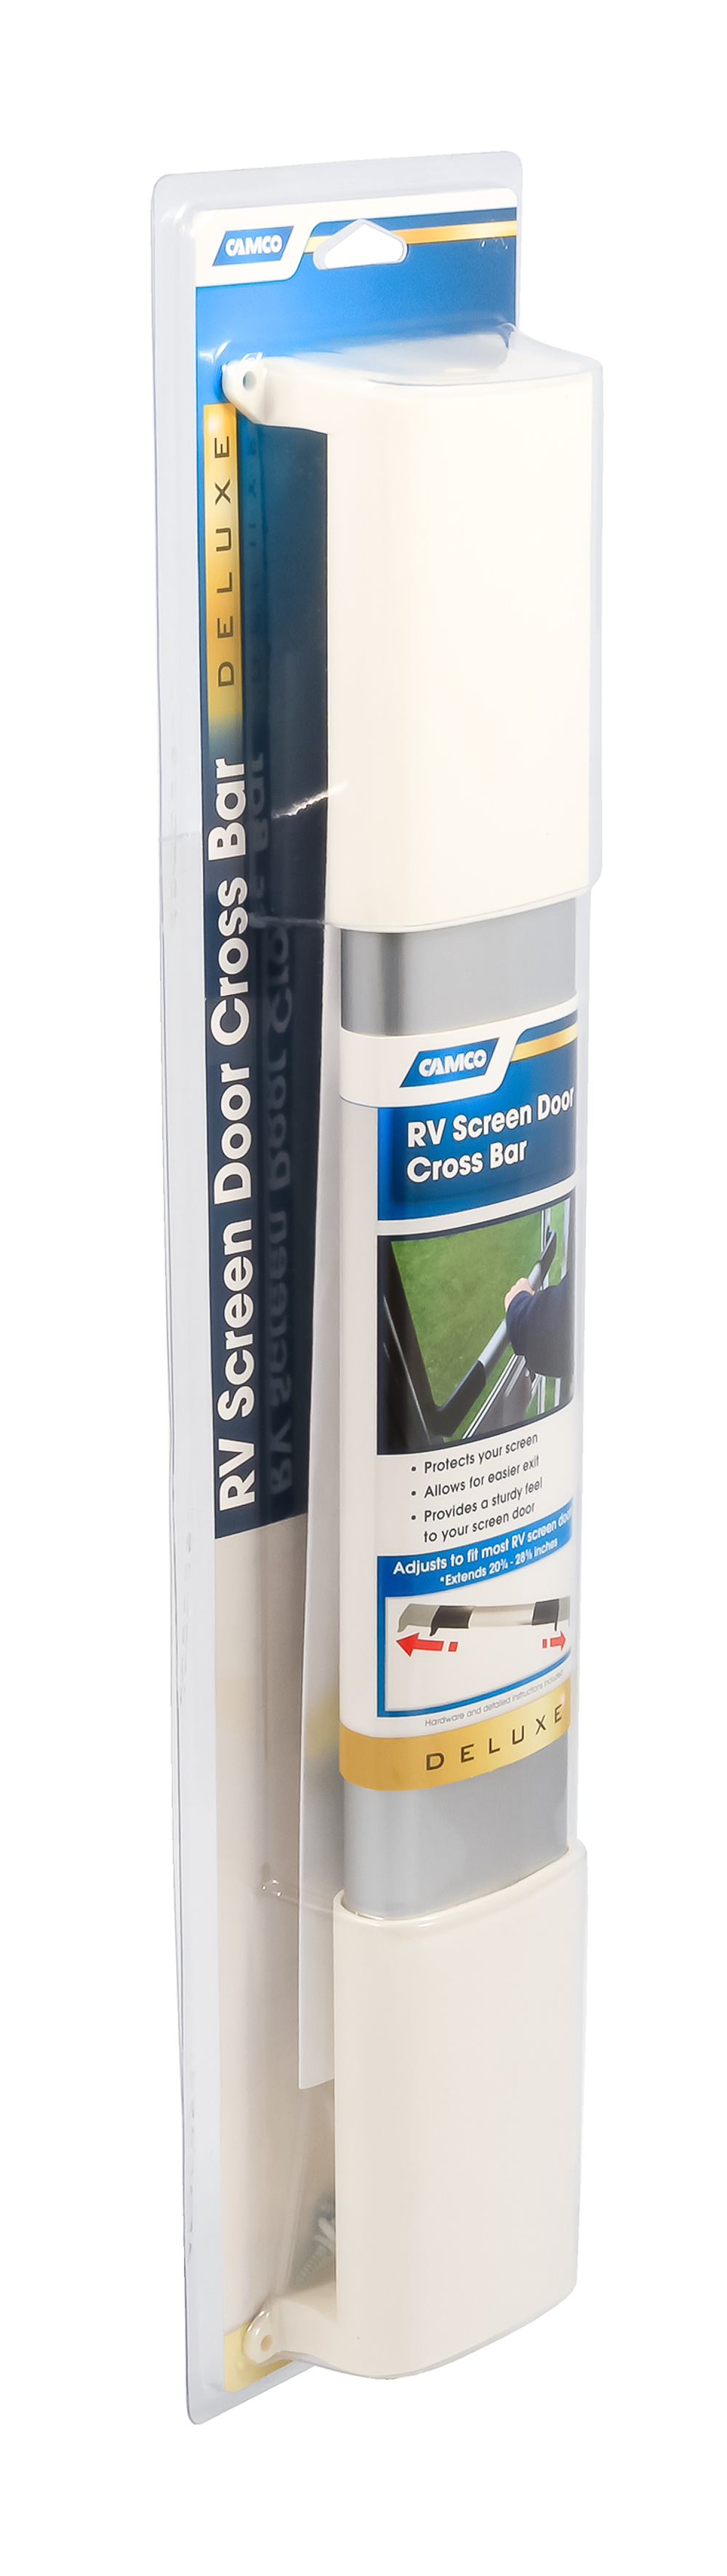 RV Screen Door Cross Bar - Deluxe - White Handles  42189